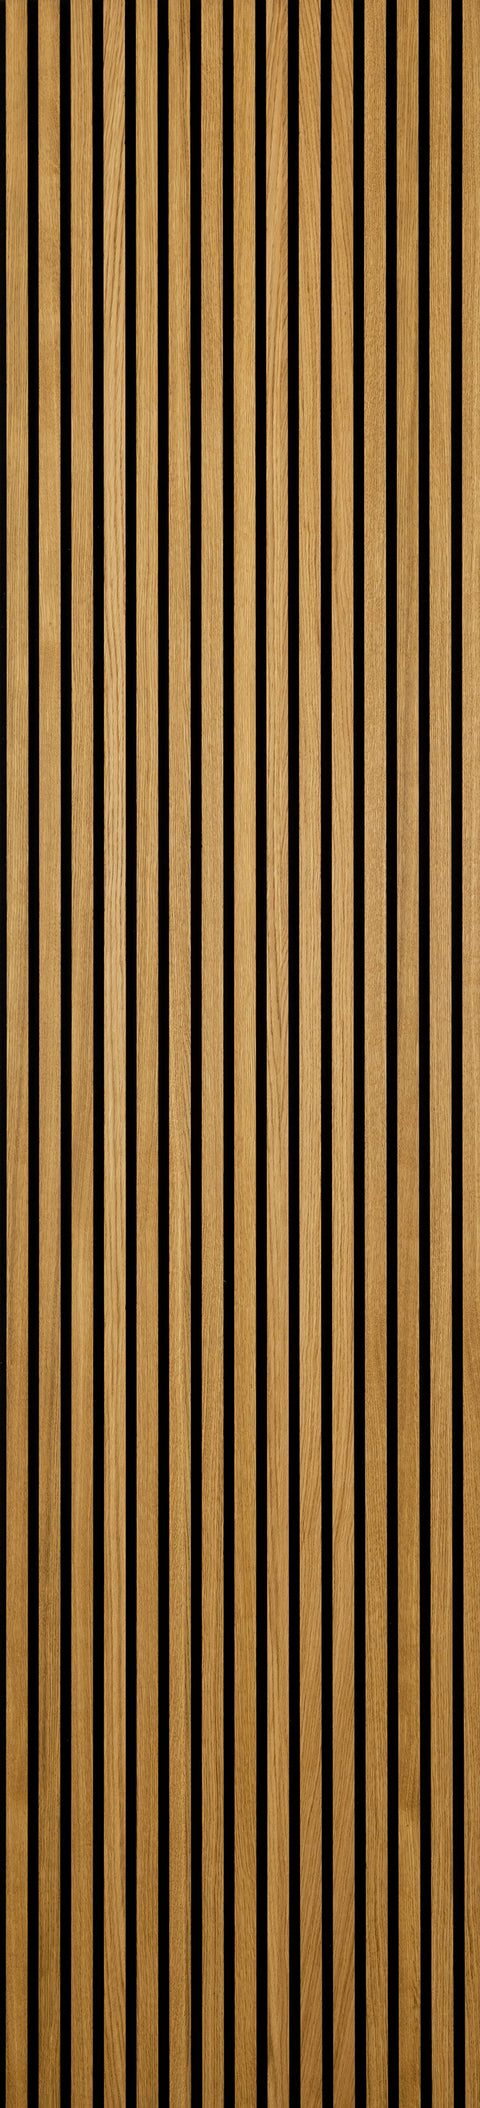 Eiken Wandpaneel Brown - 240/260/280/300 x 60 cm